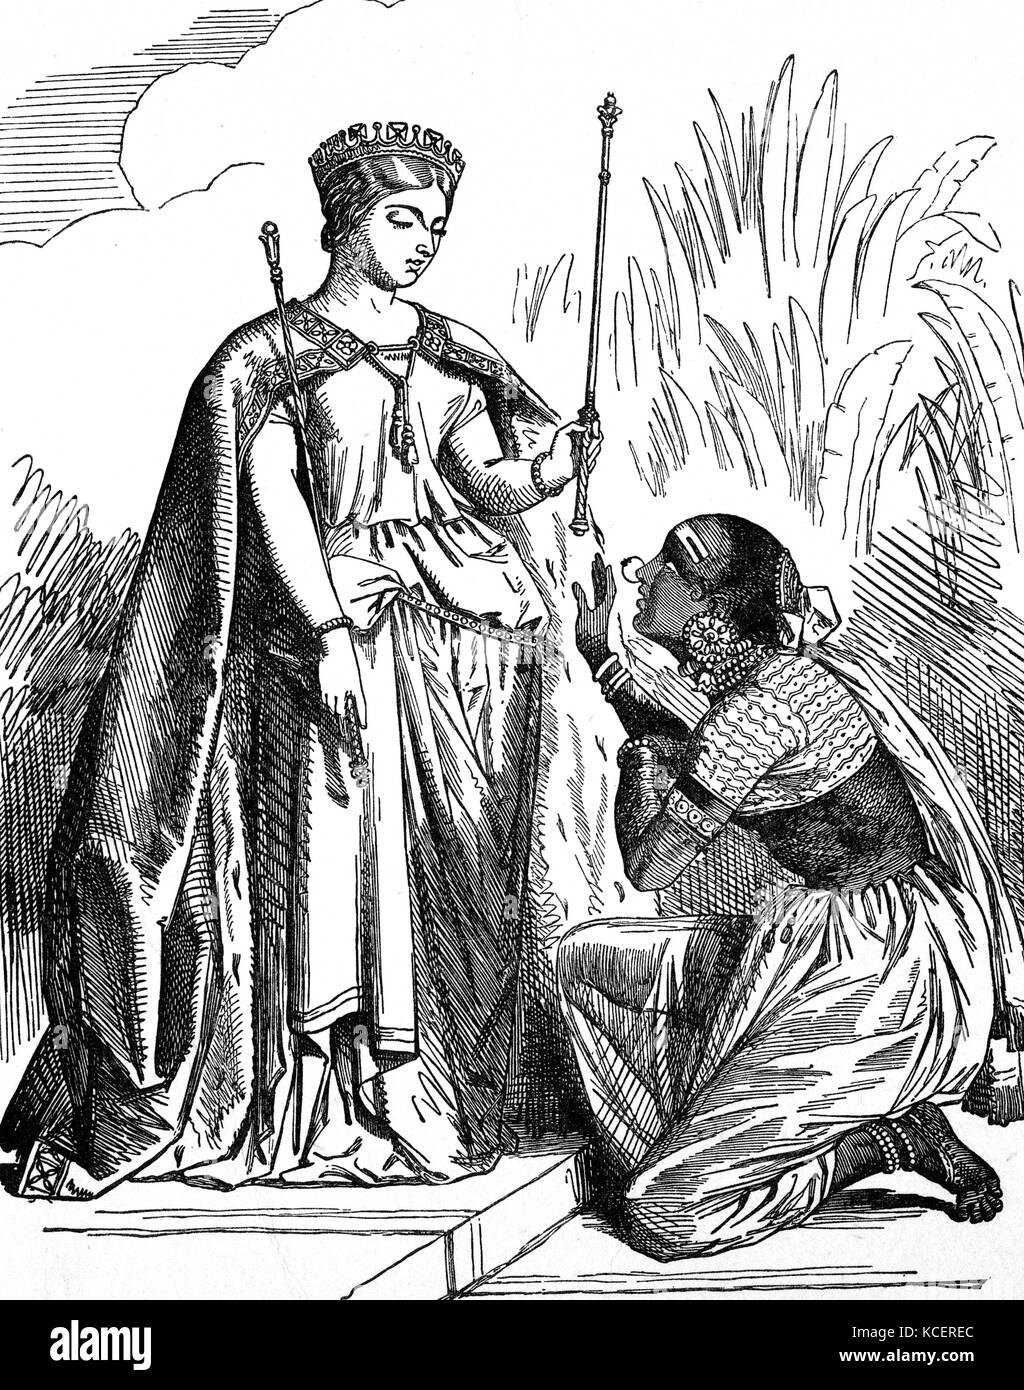 Cartoon depicting Queen Victoria 1819 1901 Queen of Great Britain and Empress of